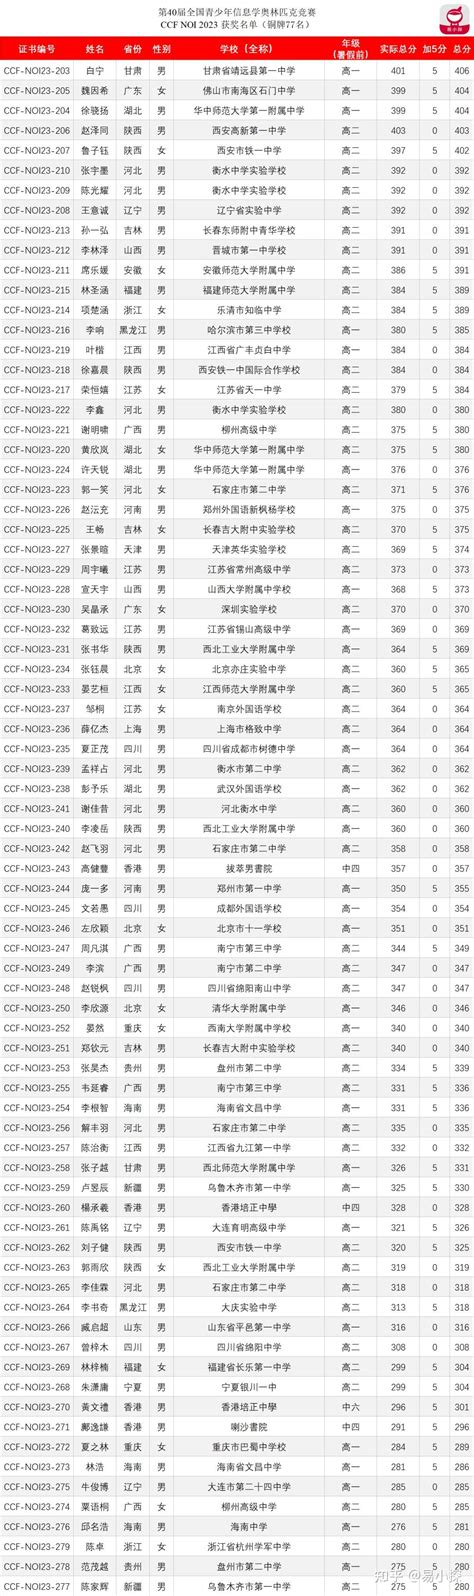 数学竞赛近6年金牌省市&中学分析：浙江、上海金牌数断层领先，强校占据近半数名额 - 知乎